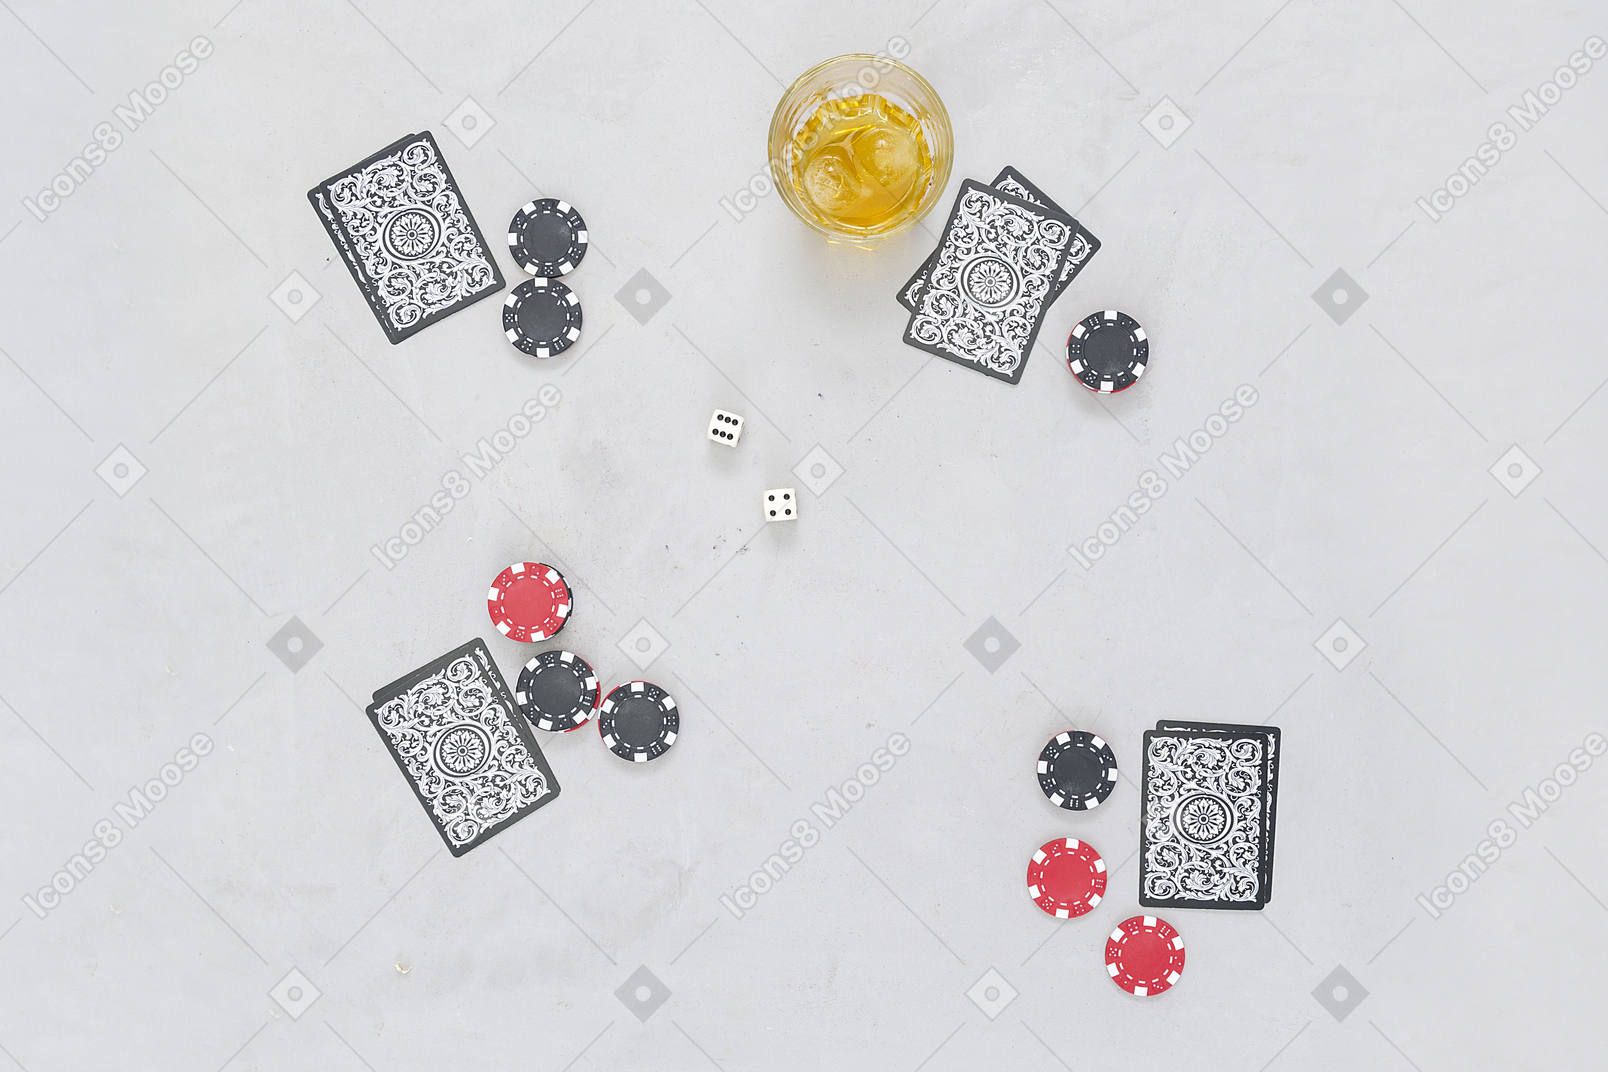 Juegos de cartas de mesa vienen bien con bebidas alcohólicas